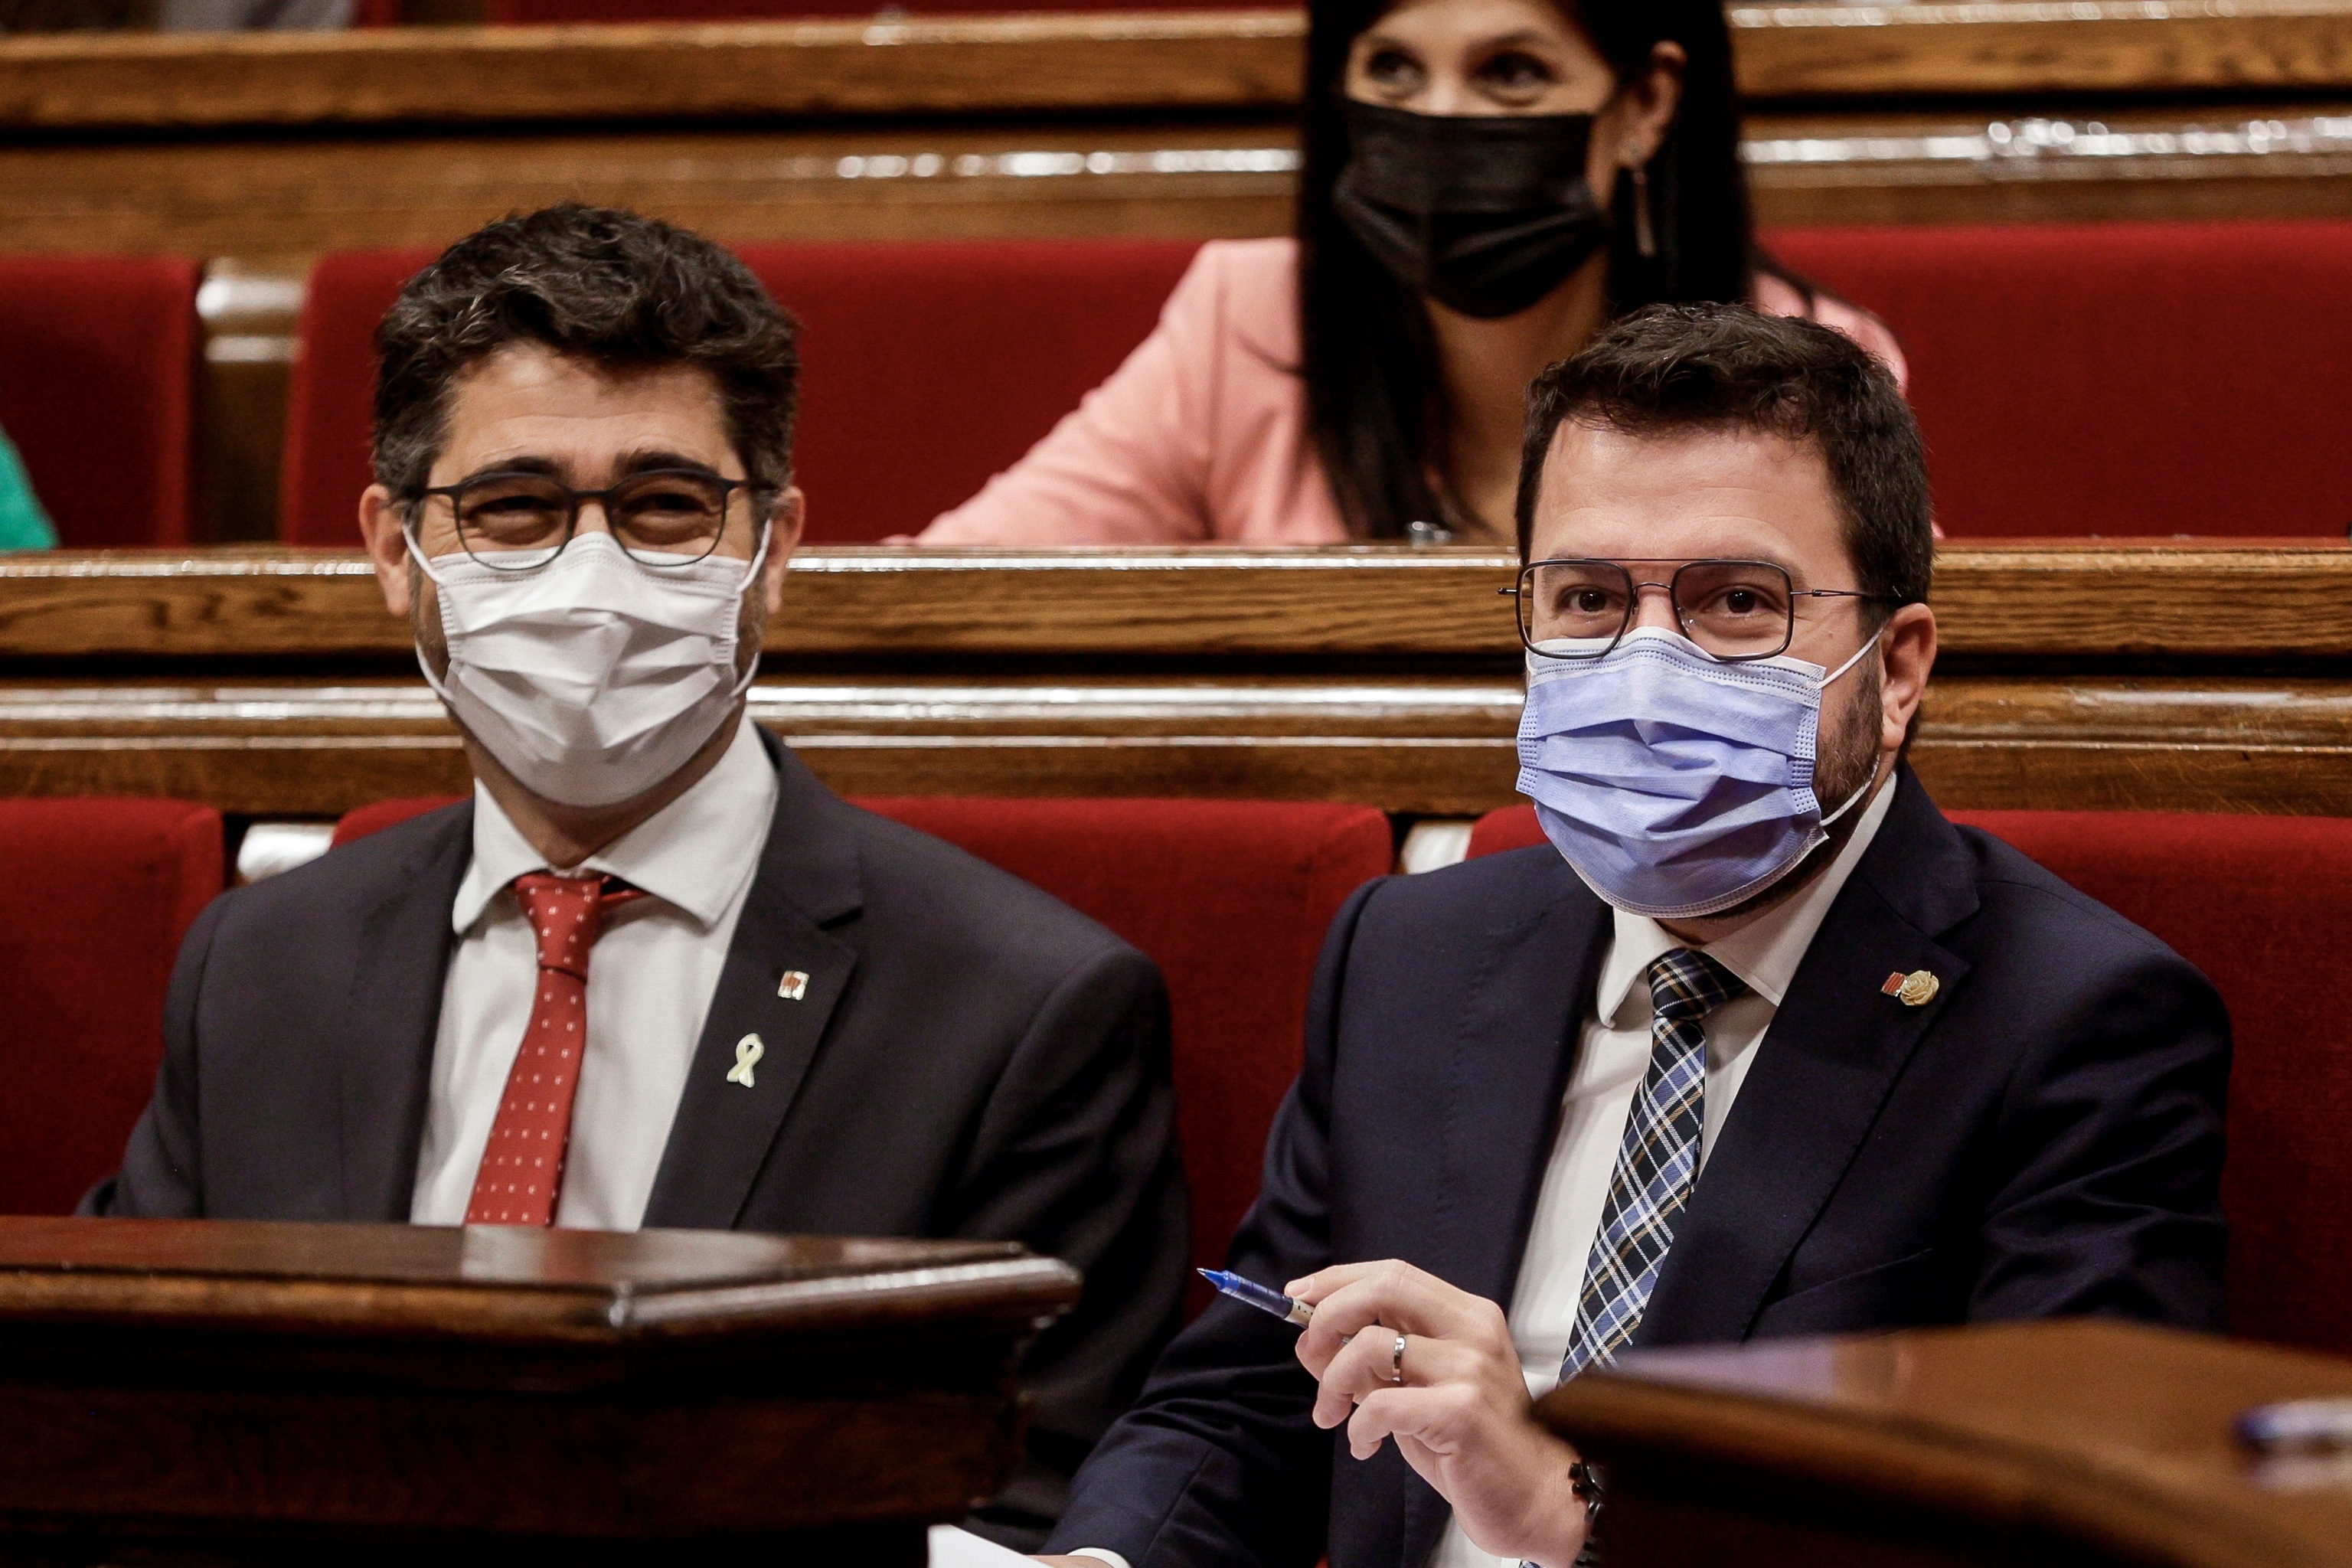 Aragons junto a Puigner, en el Parlament.